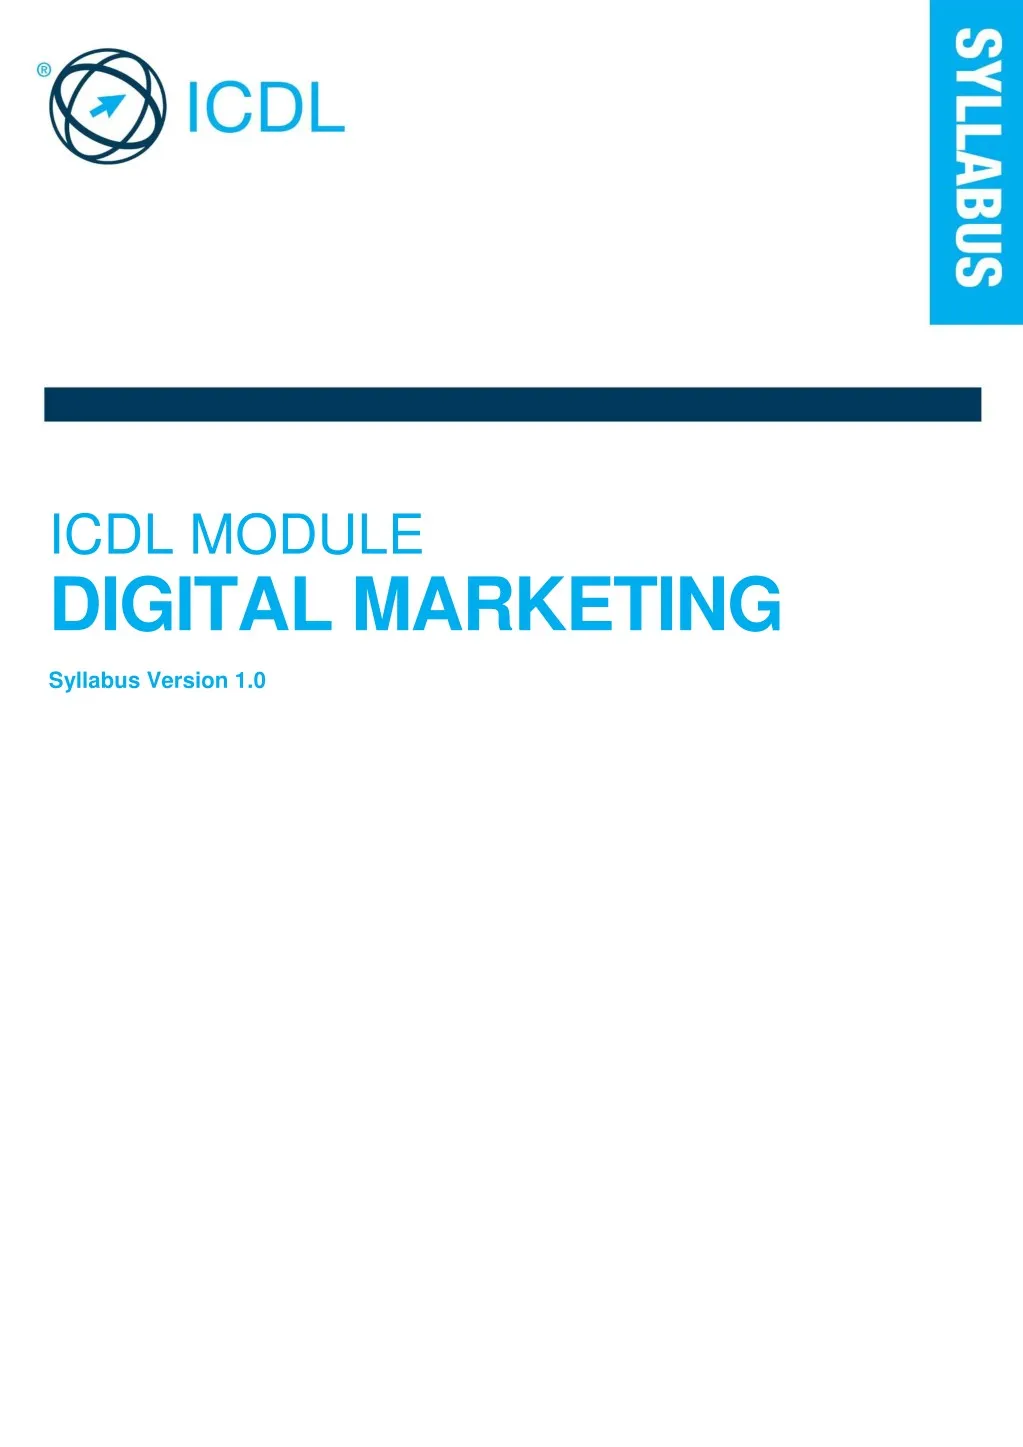 icdl module digital marketing